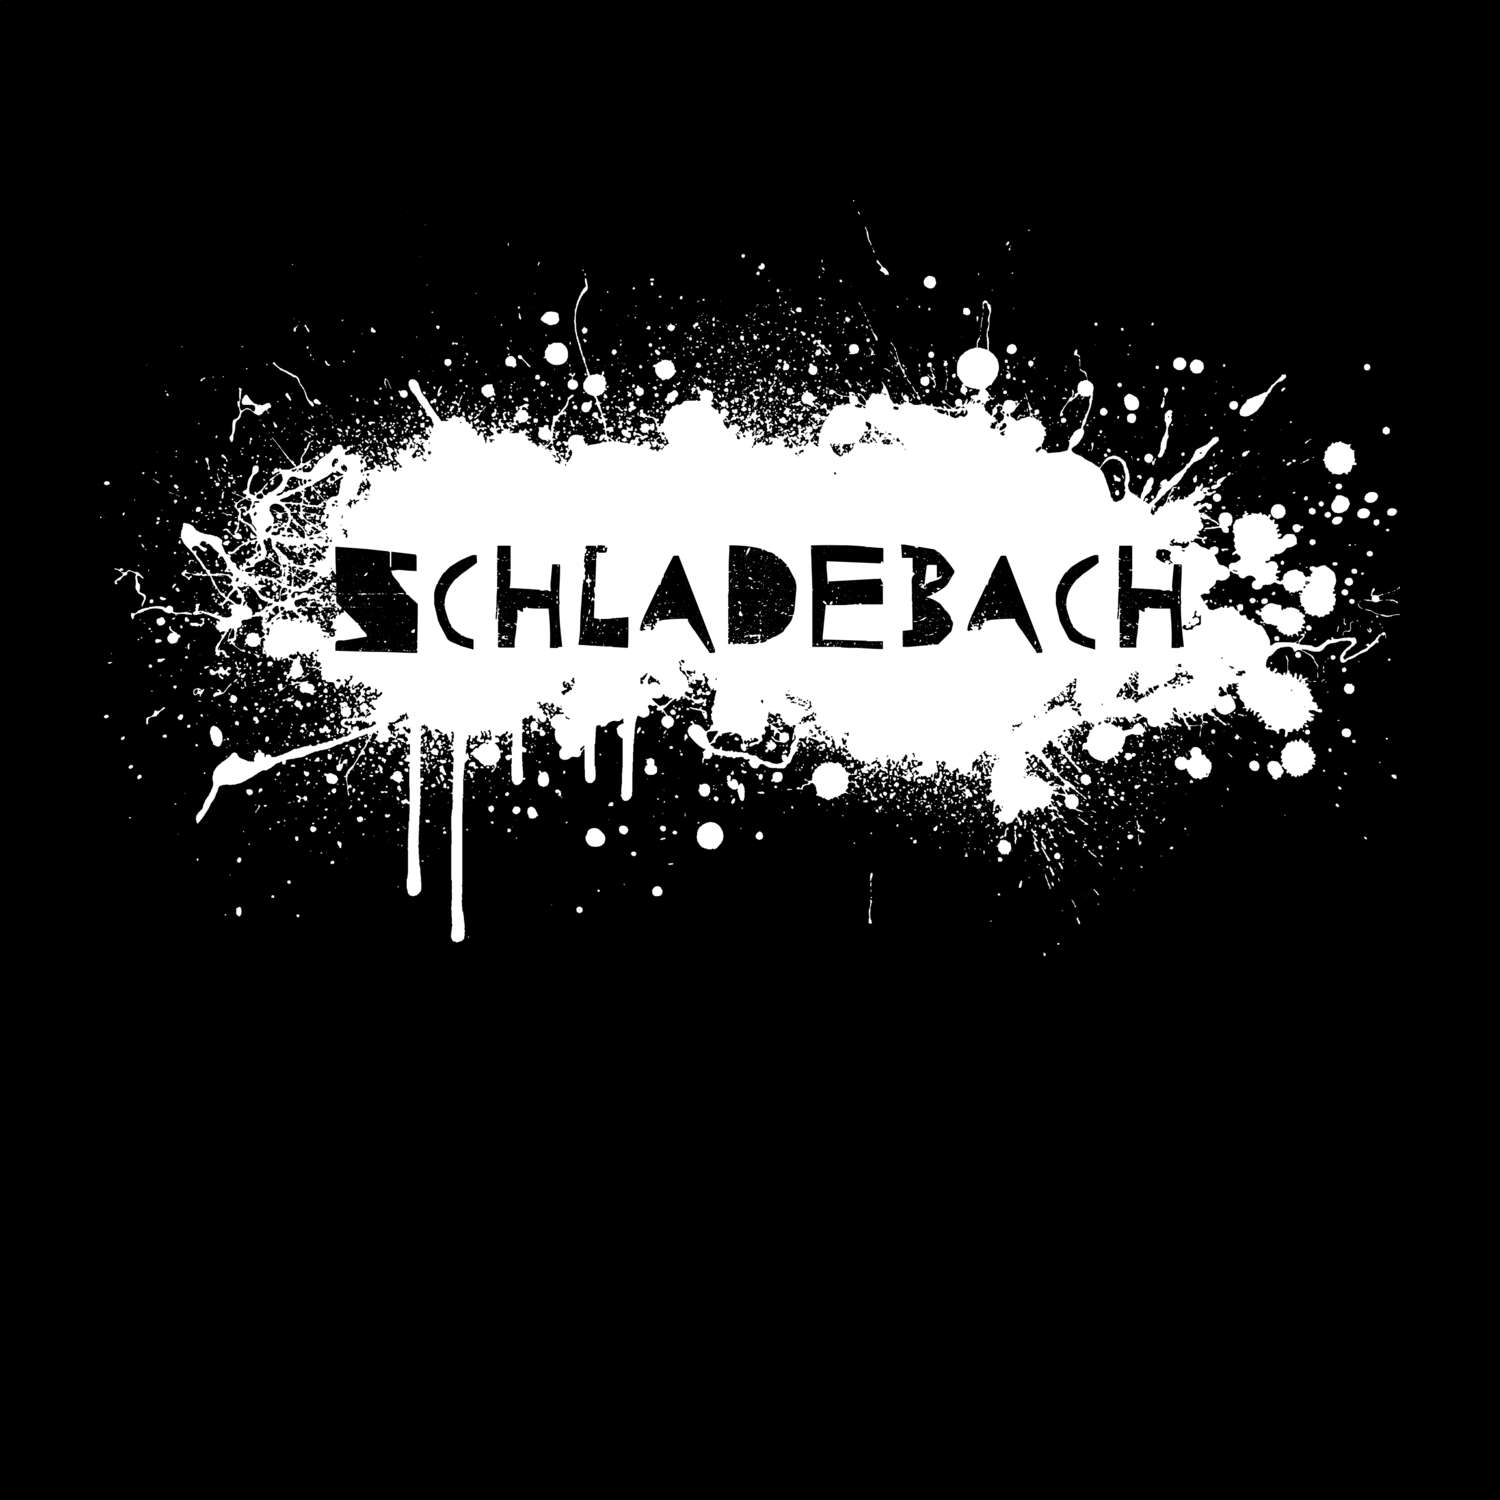 Schladebach T-Shirt »Paint Splash Punk«